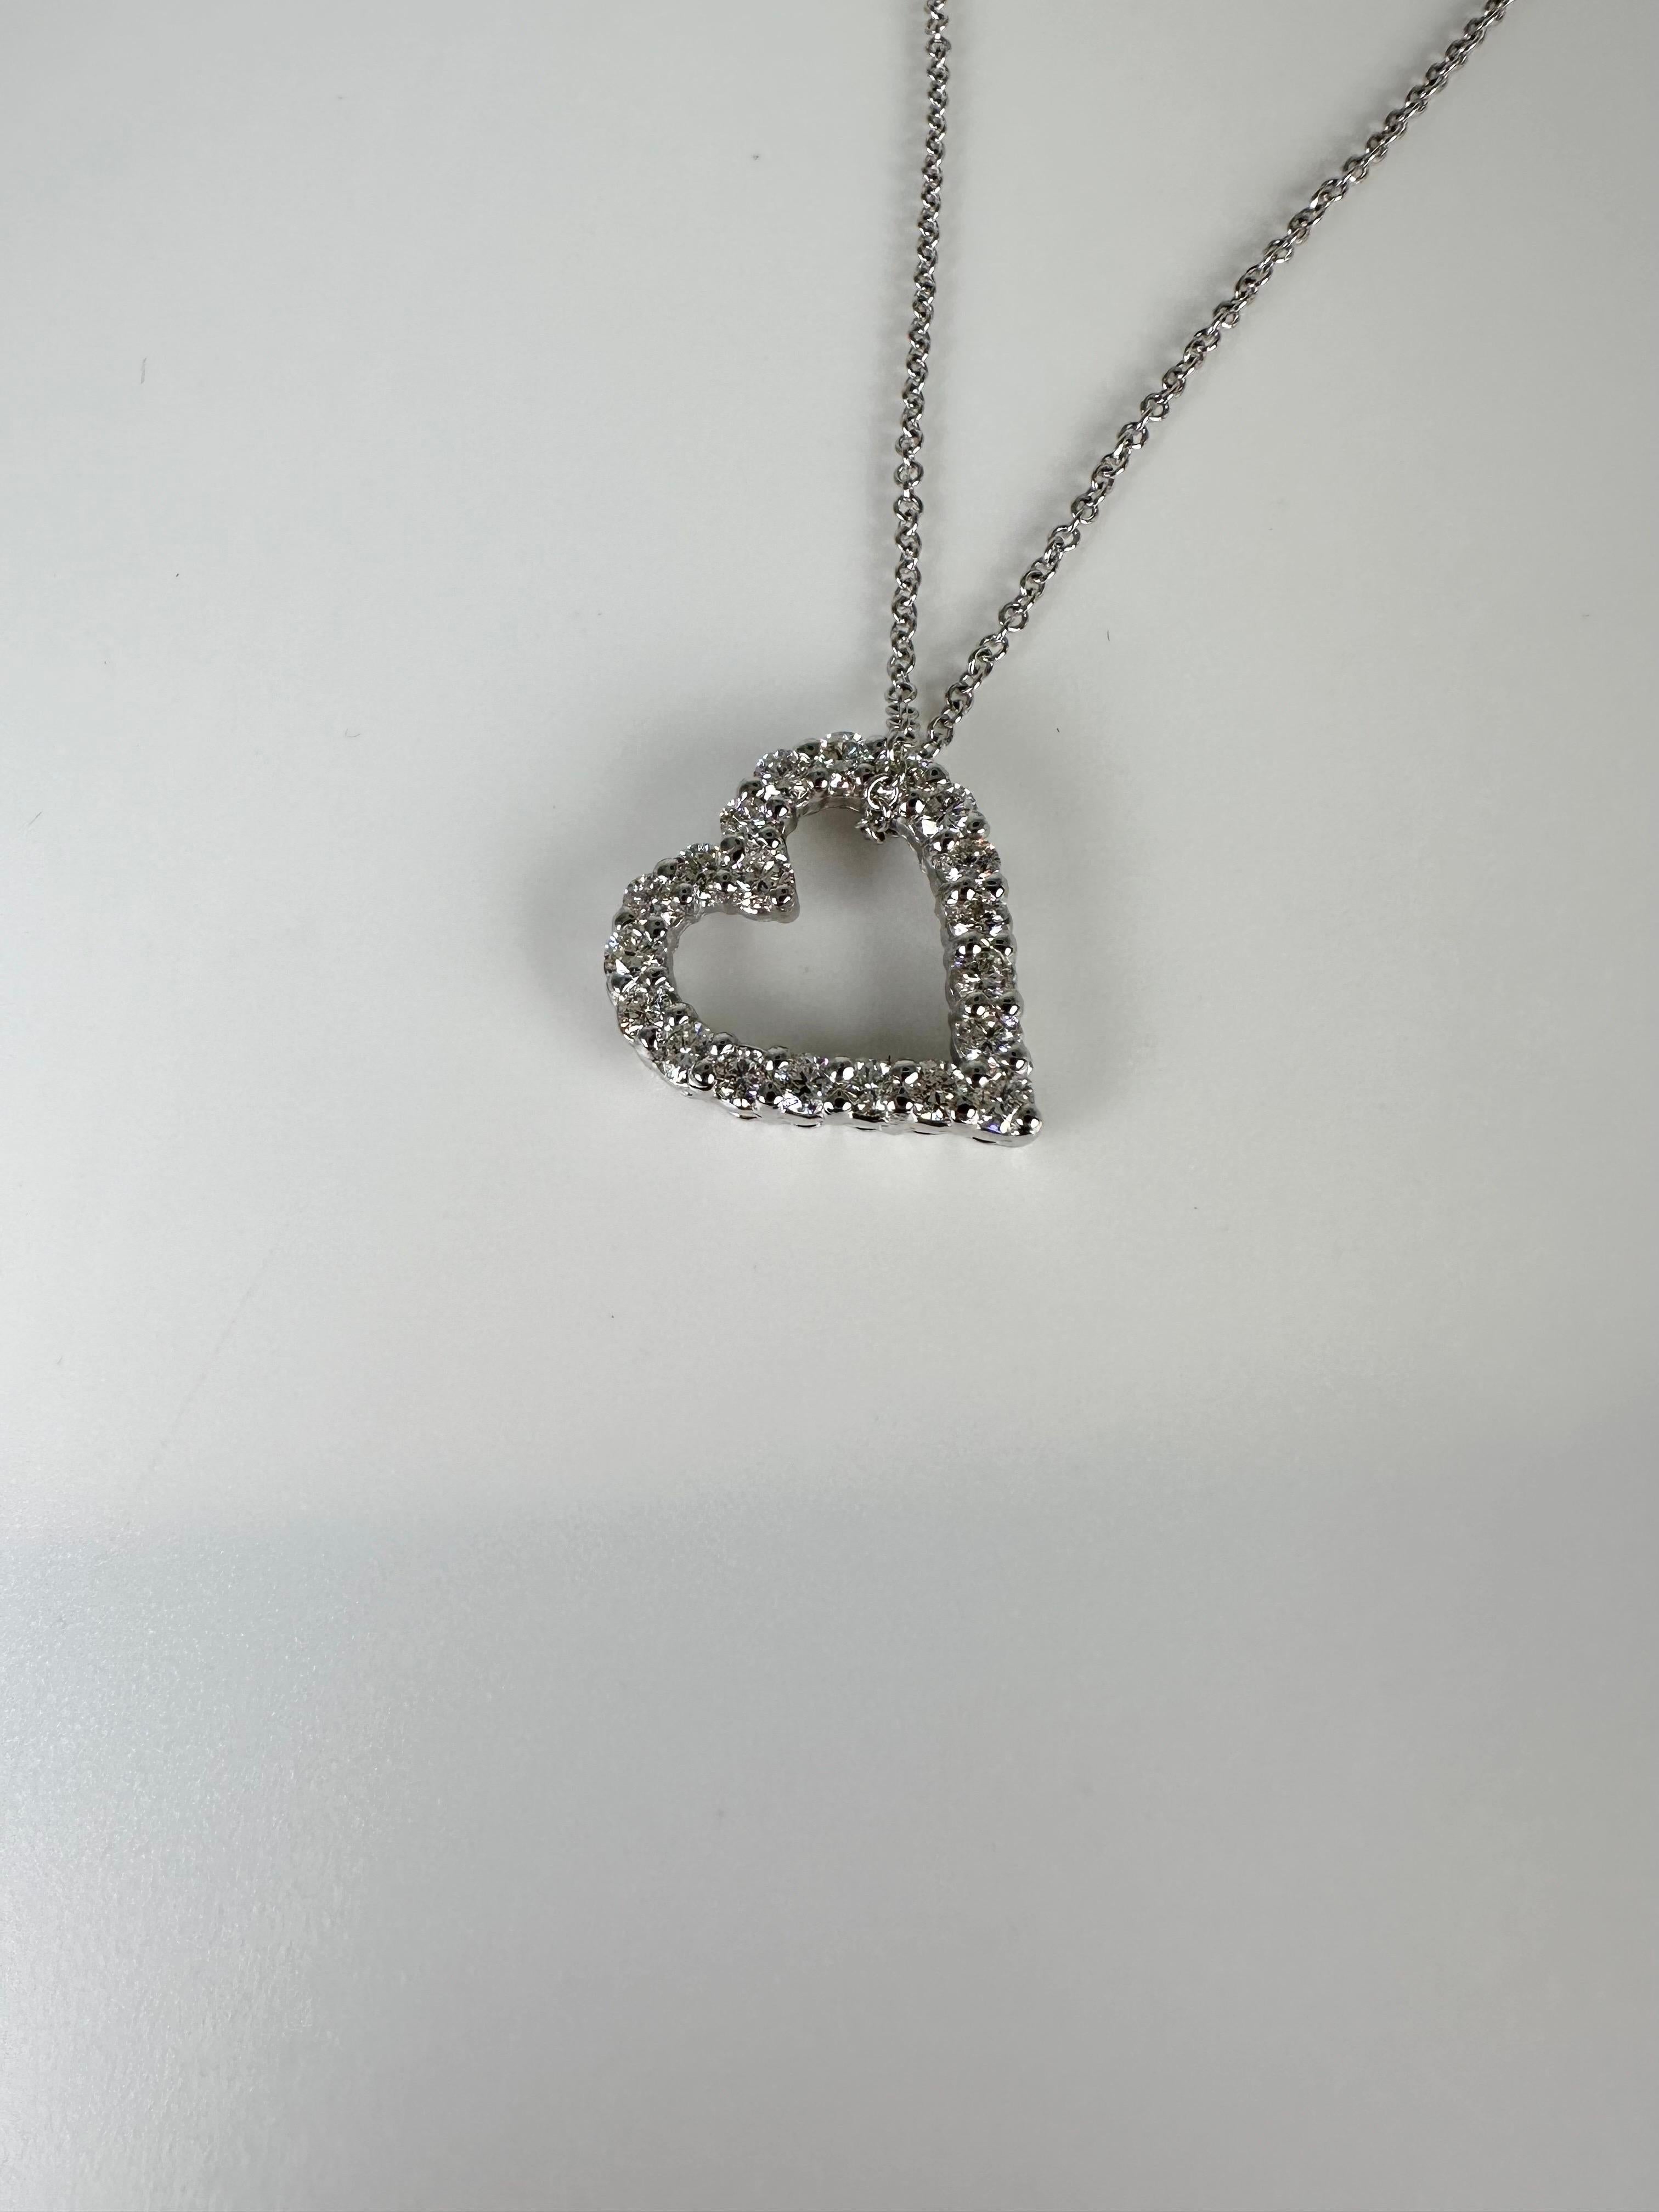 Collier cœur en diamant en or blanc 14KT, joli pendentif avec beaucoup d'éclat, très bien réalisé avec une chaîne de style moderne de 16